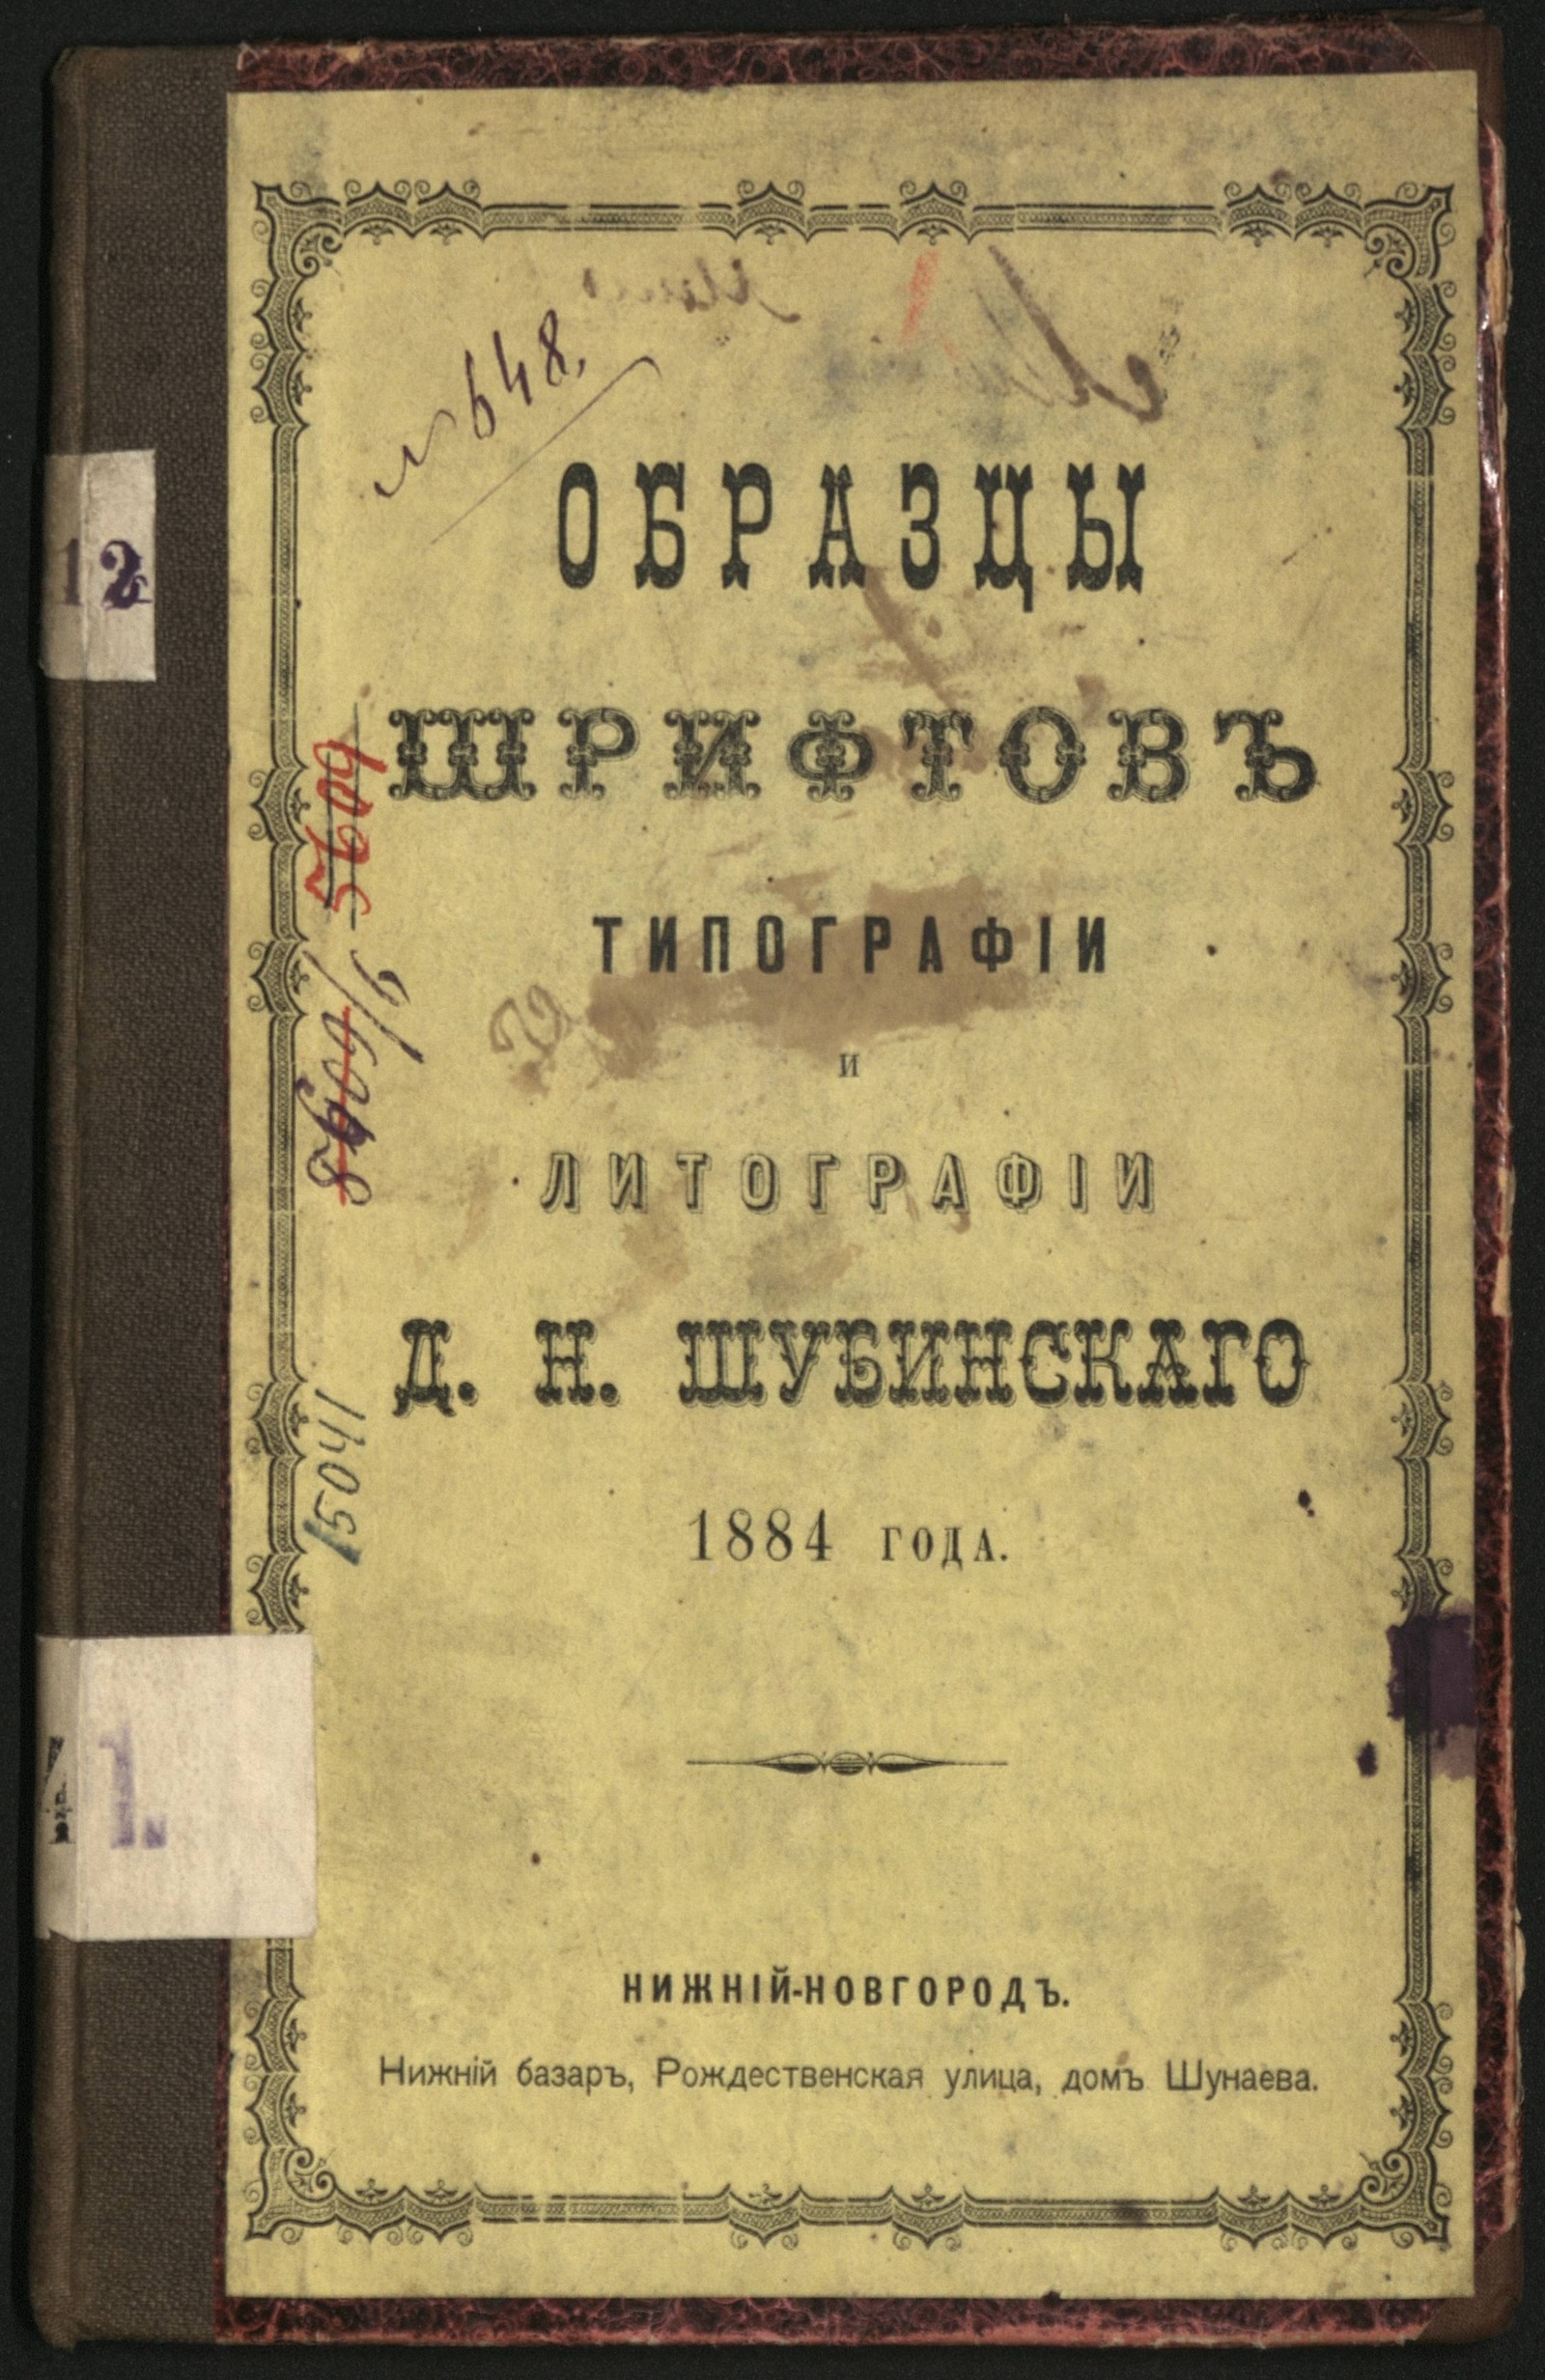 Изображение книги Образцы шрифтов типографии и литографии Д. Н. Шубинскаго 1884 года